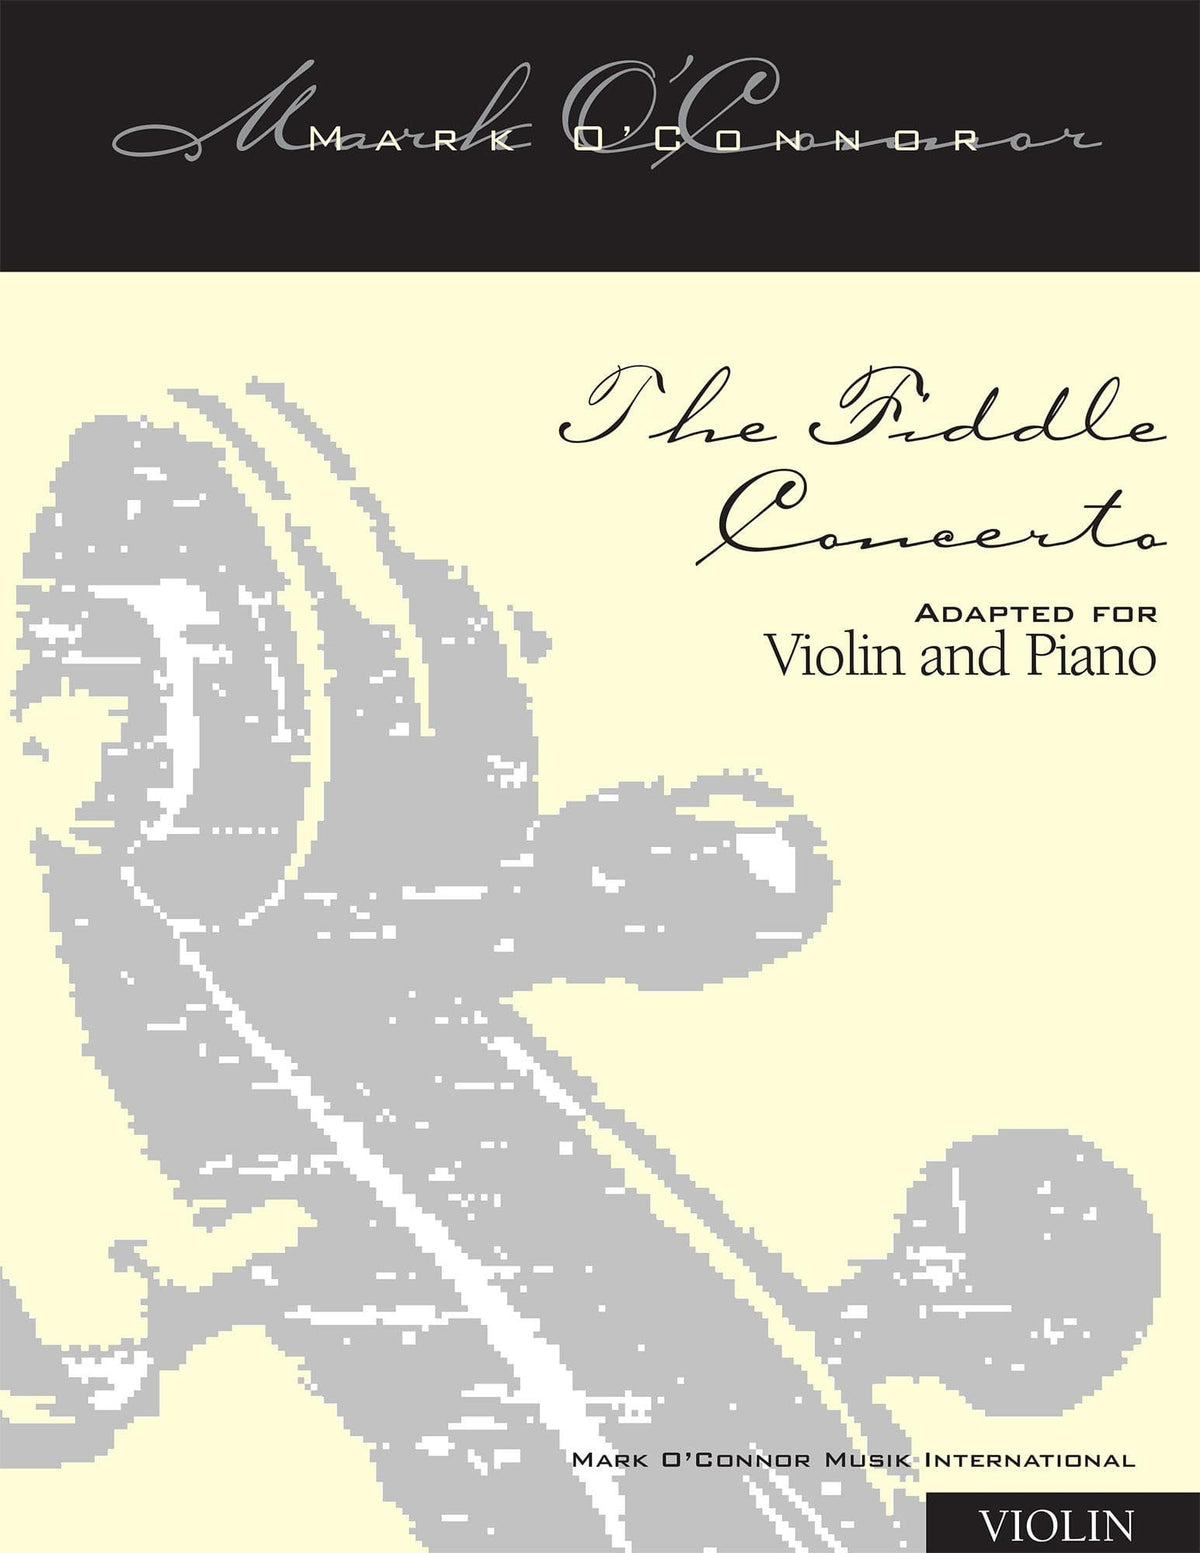 O'Connor, Mark - The FIDDLE CONCERTO for Violin and Piano - Violin - Digital Download